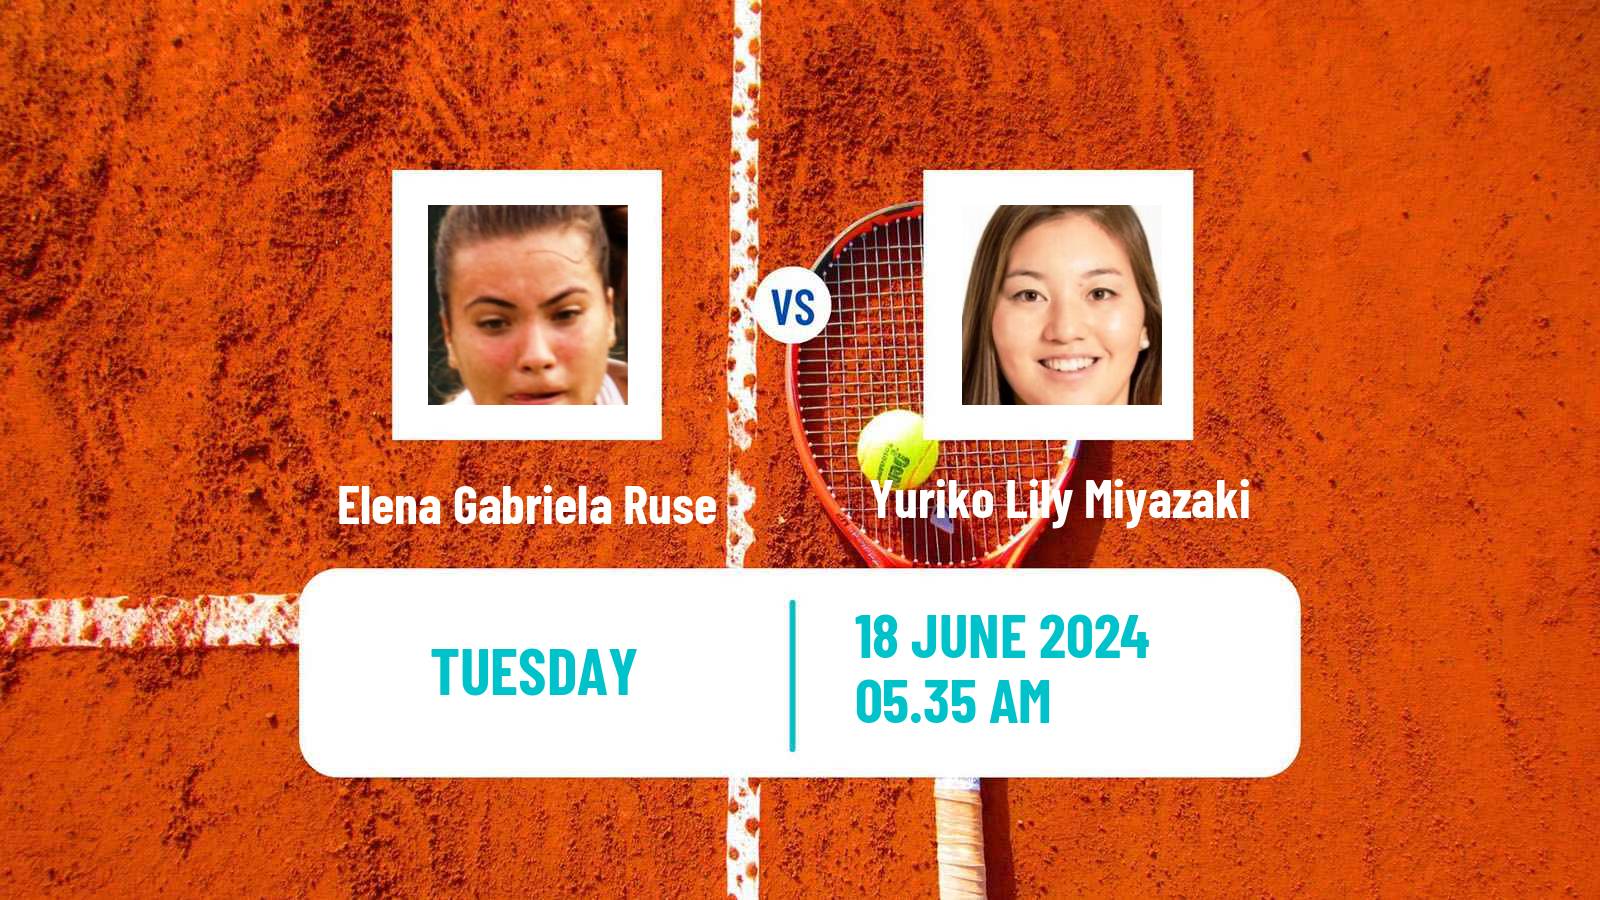 Tennis ITF W100 Ilkley Women Elena Gabriela Ruse - Yuriko Lily Miyazaki